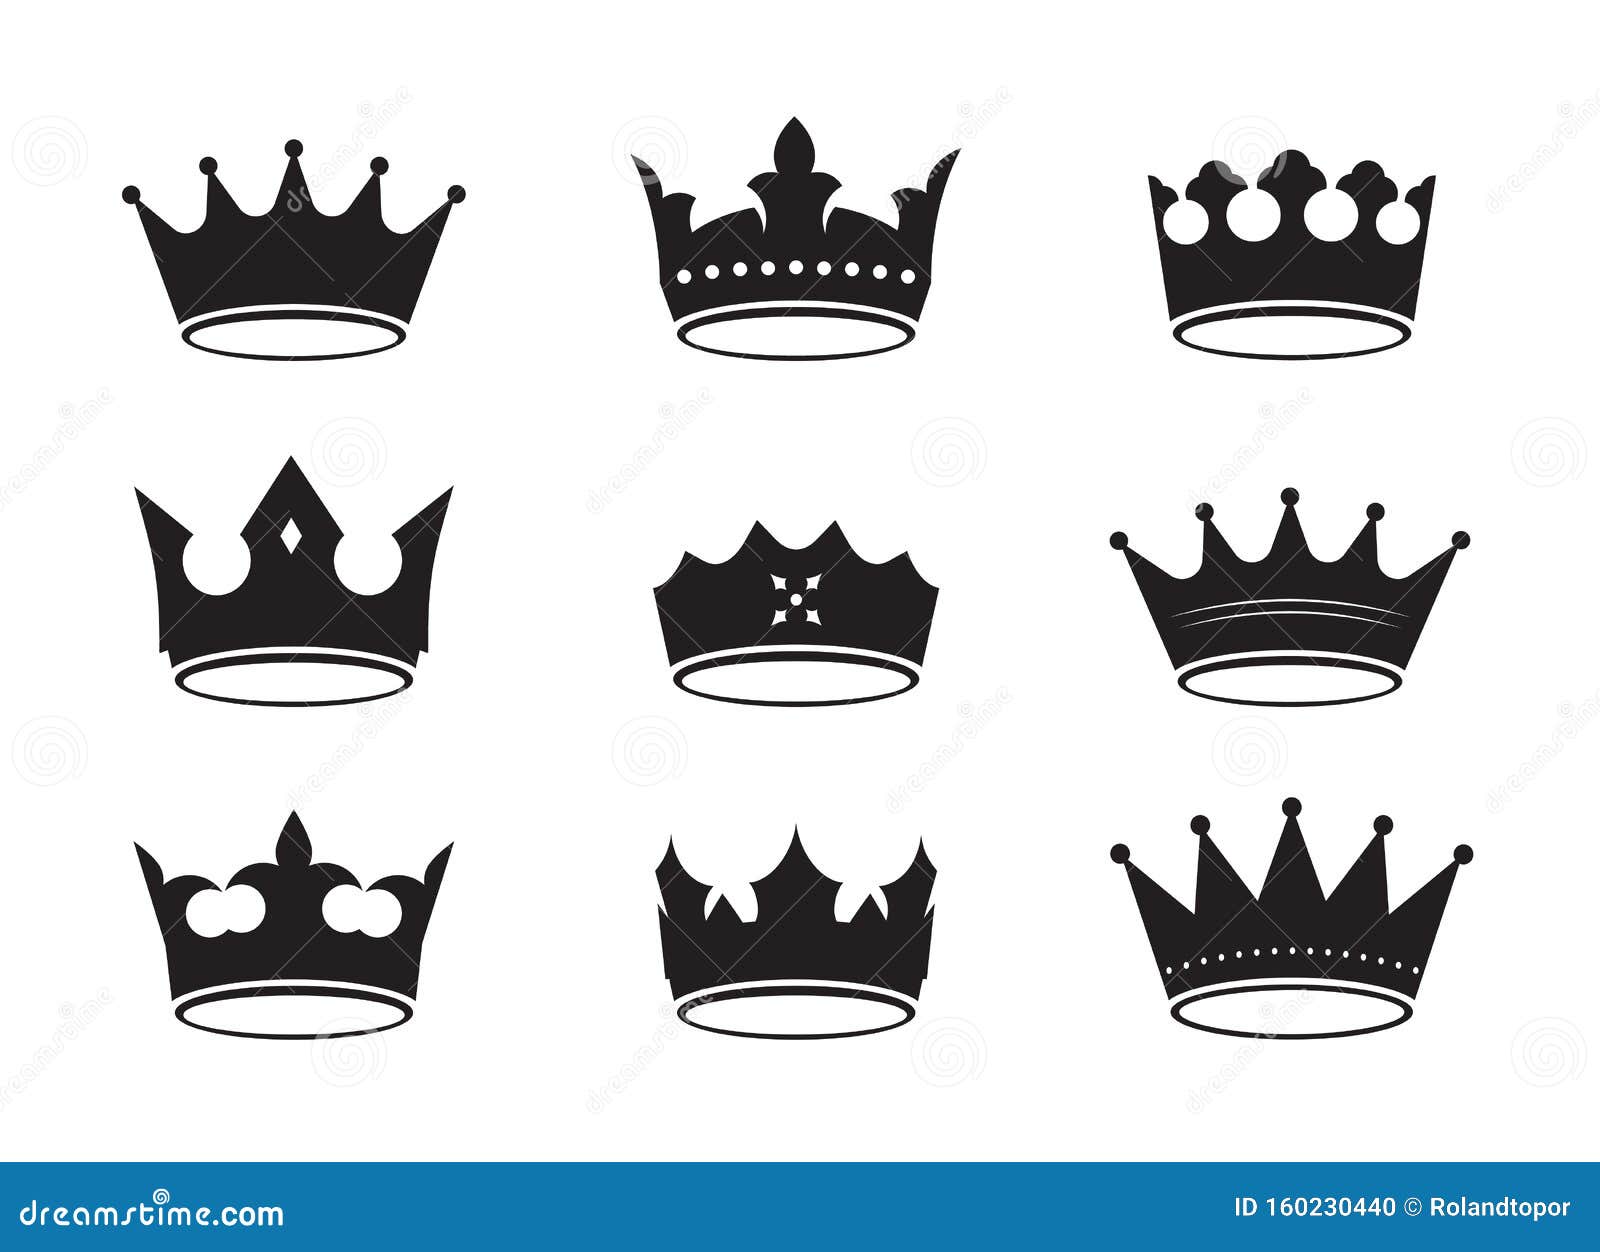 黑色王冠图标素材图片素材-编号11269606-图行天下